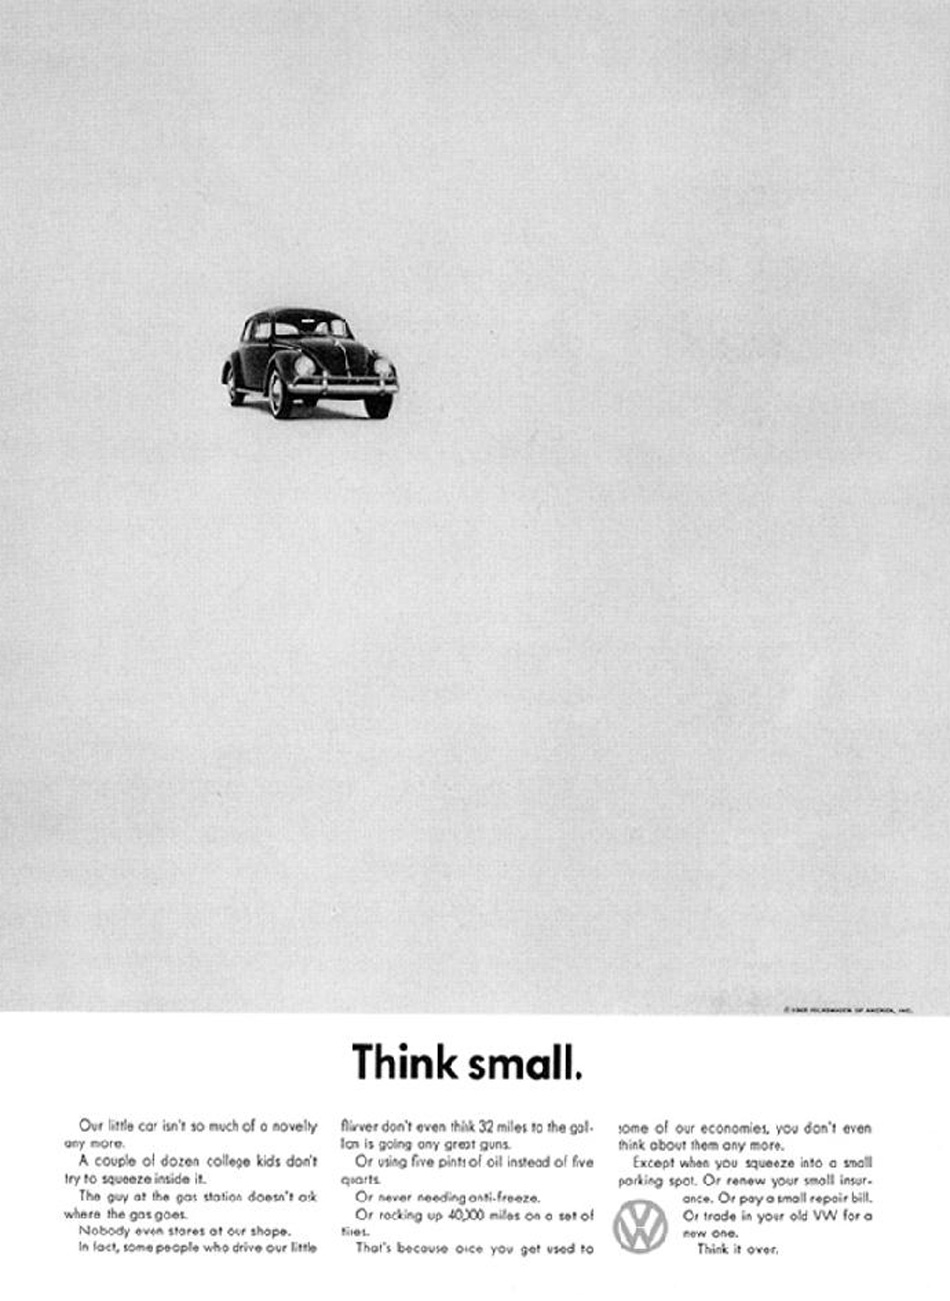 Histoire : Volkswagen révolutionne la publicité – AUTOcult.fr